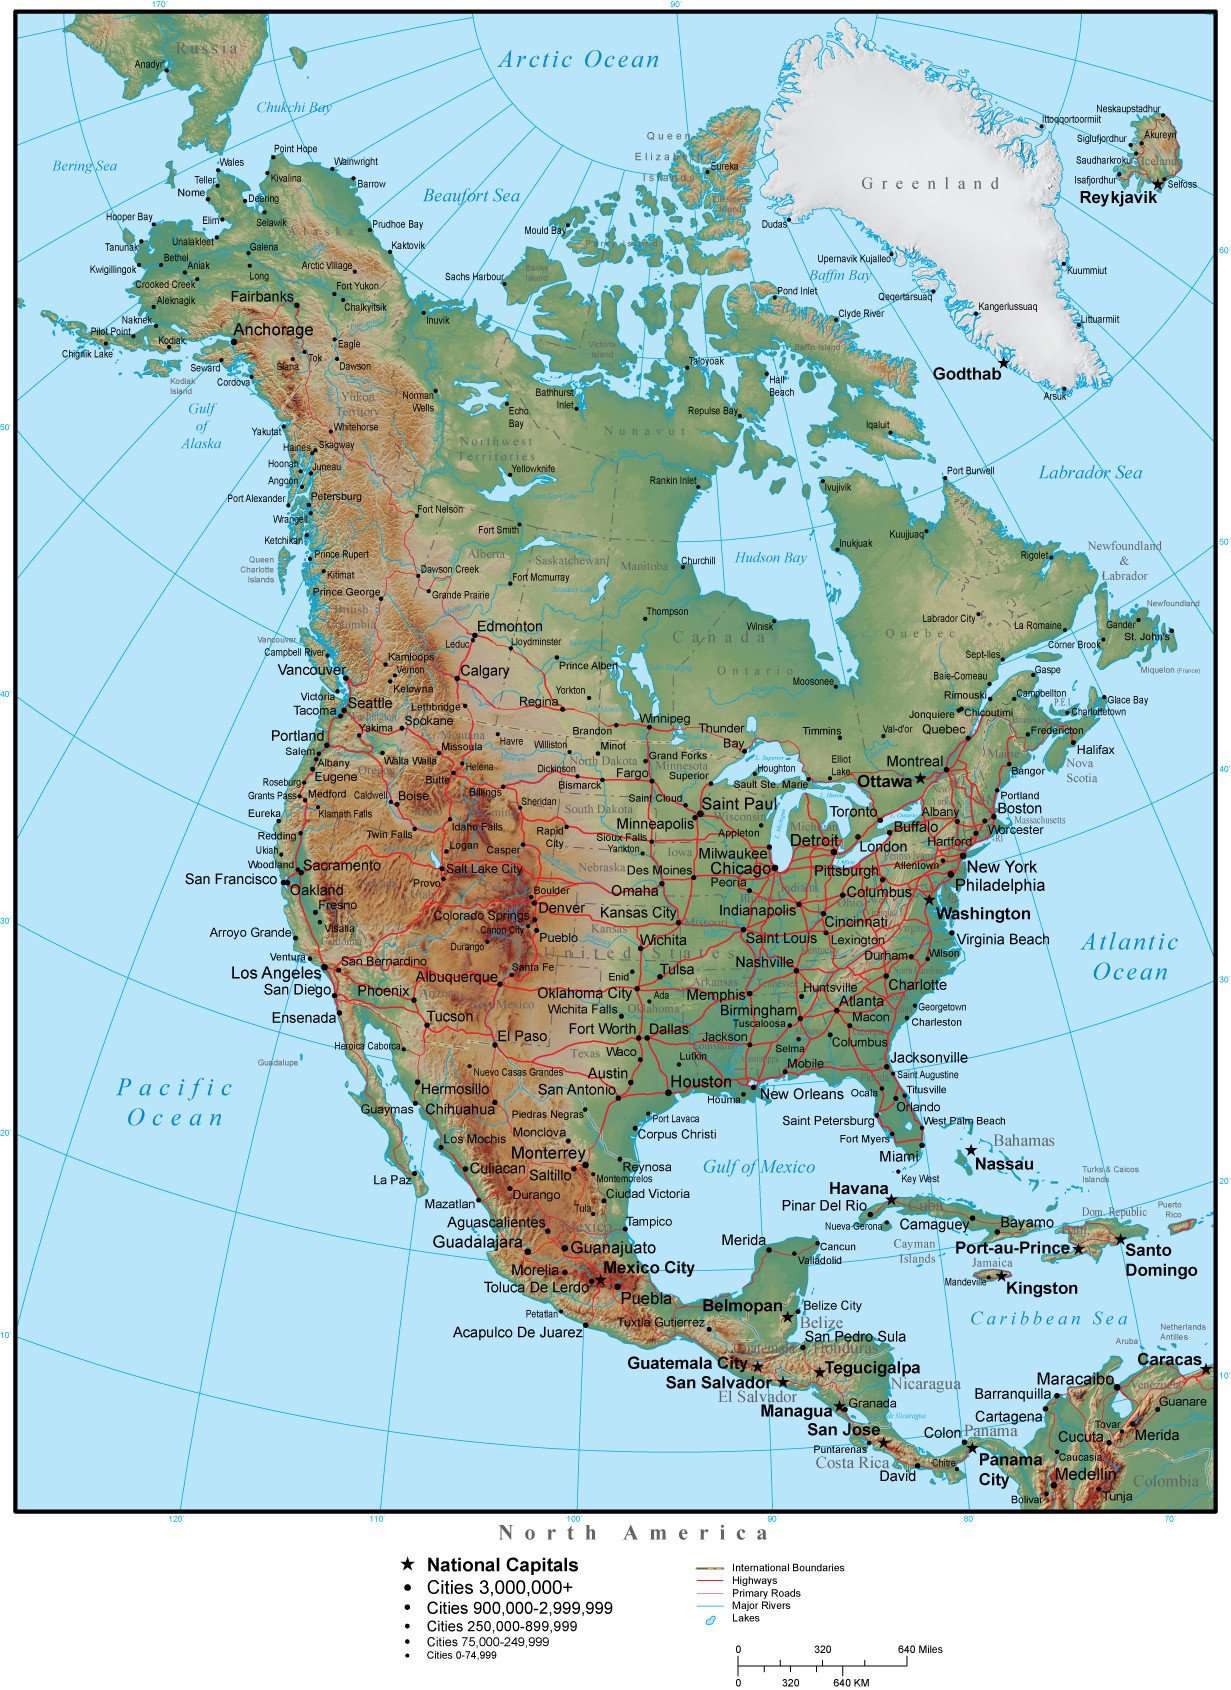 Реки берущие начало в кордильерах. Горы Кордильеры на физической карте Северной Америки. Скалистые горы на карте Северной Америки. Горы скалистые горы на карте Северной Америки. Скалистые горы на контурной карте Северной Америки.